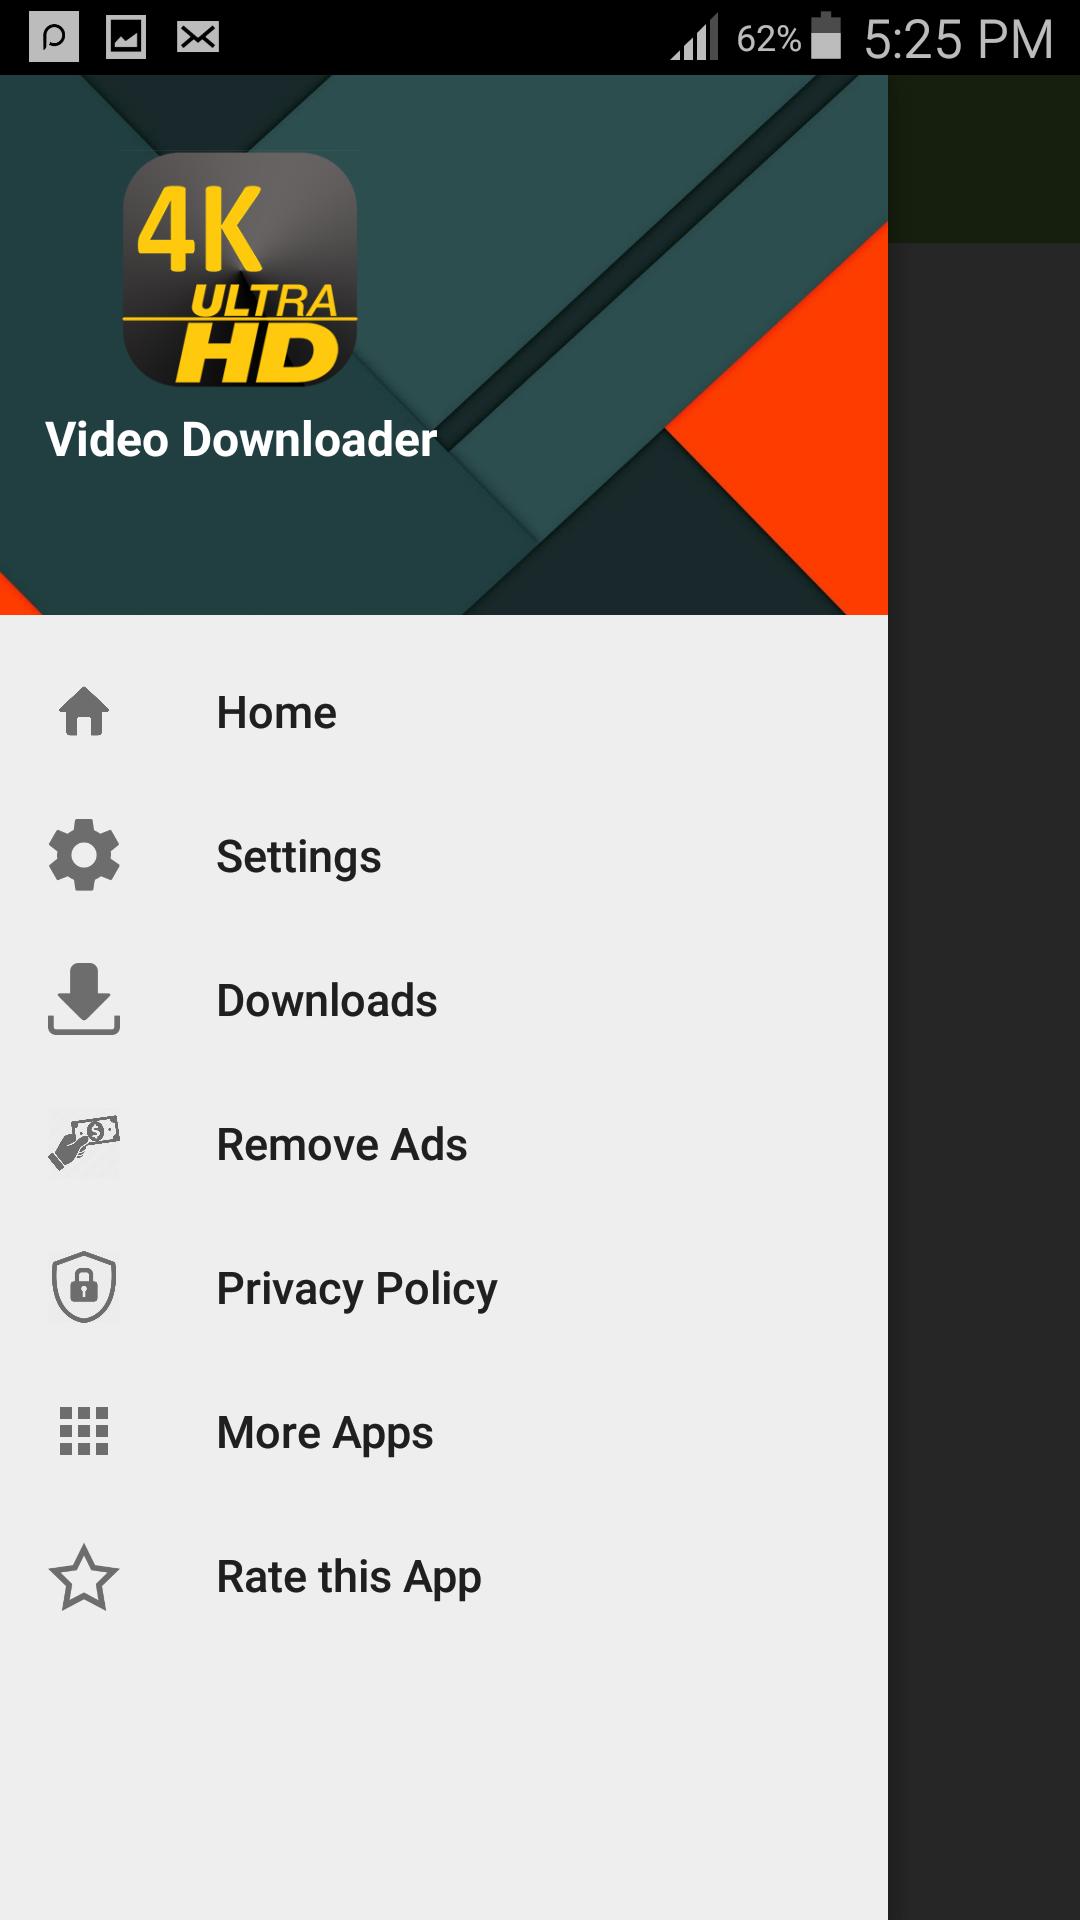 Video downloader 4k Download the